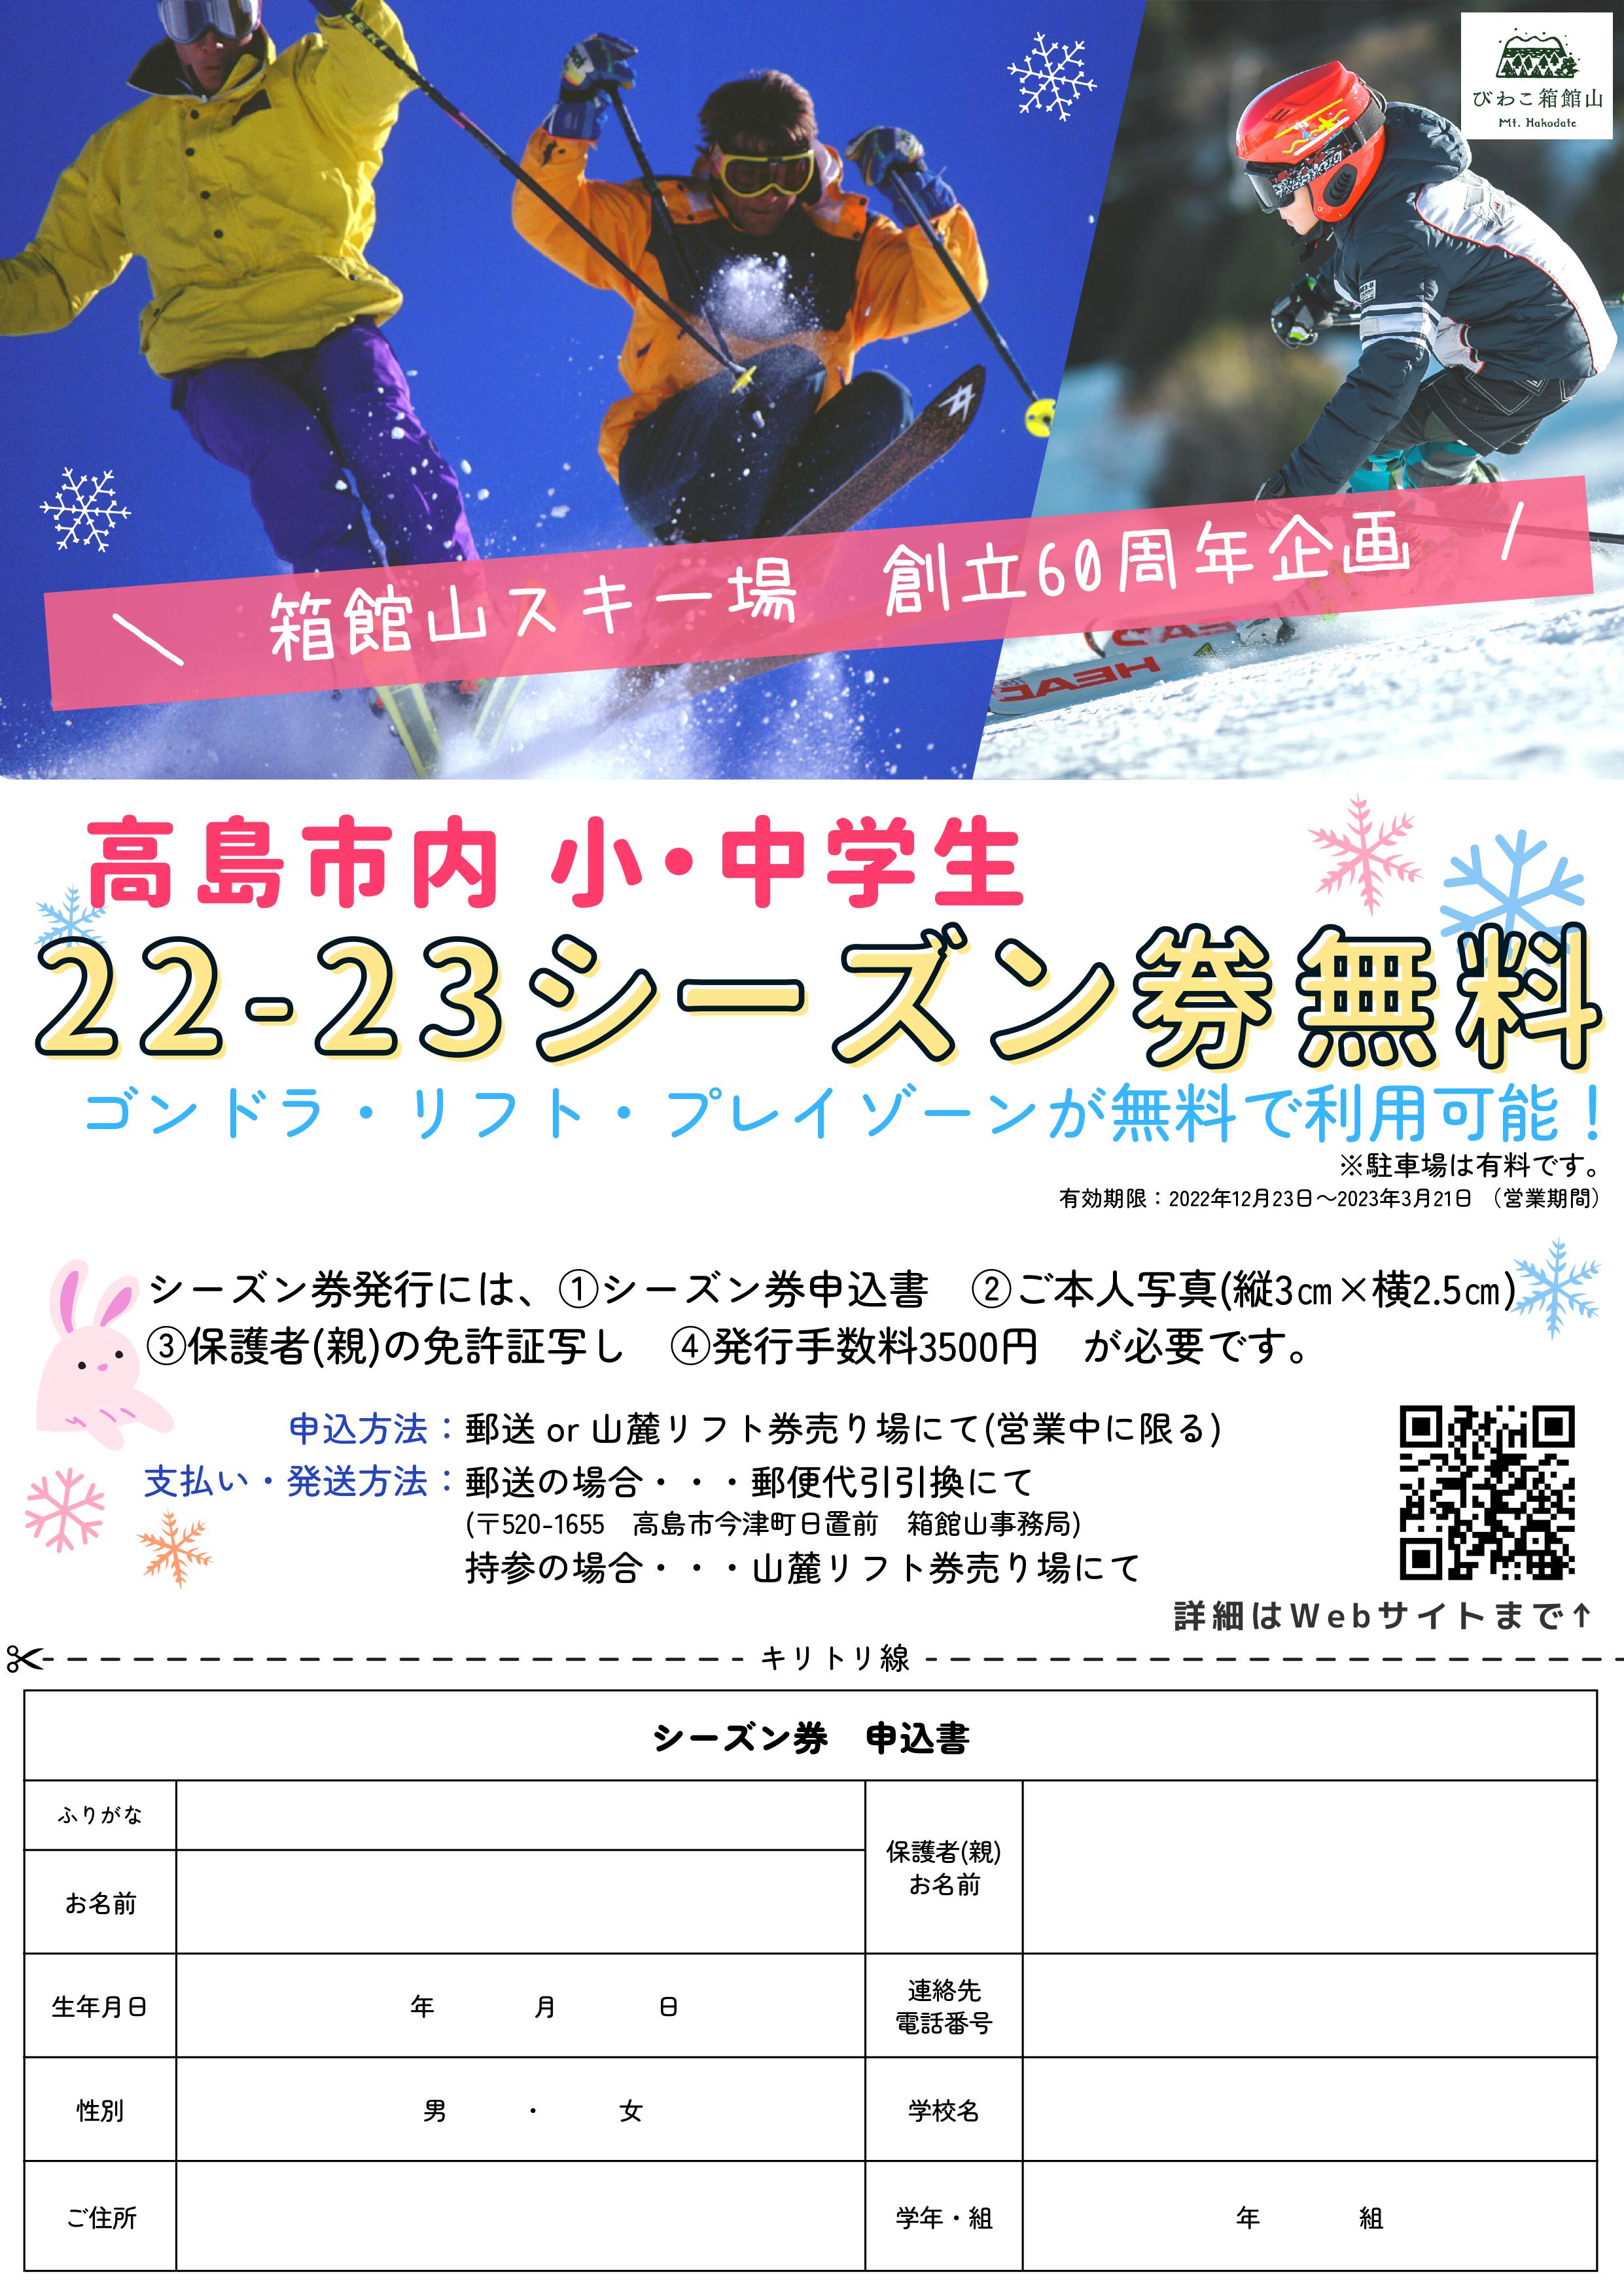 ニュース・イベント| 滋賀県の琵琶湖が一望できるスキー場 びわこ箱館山